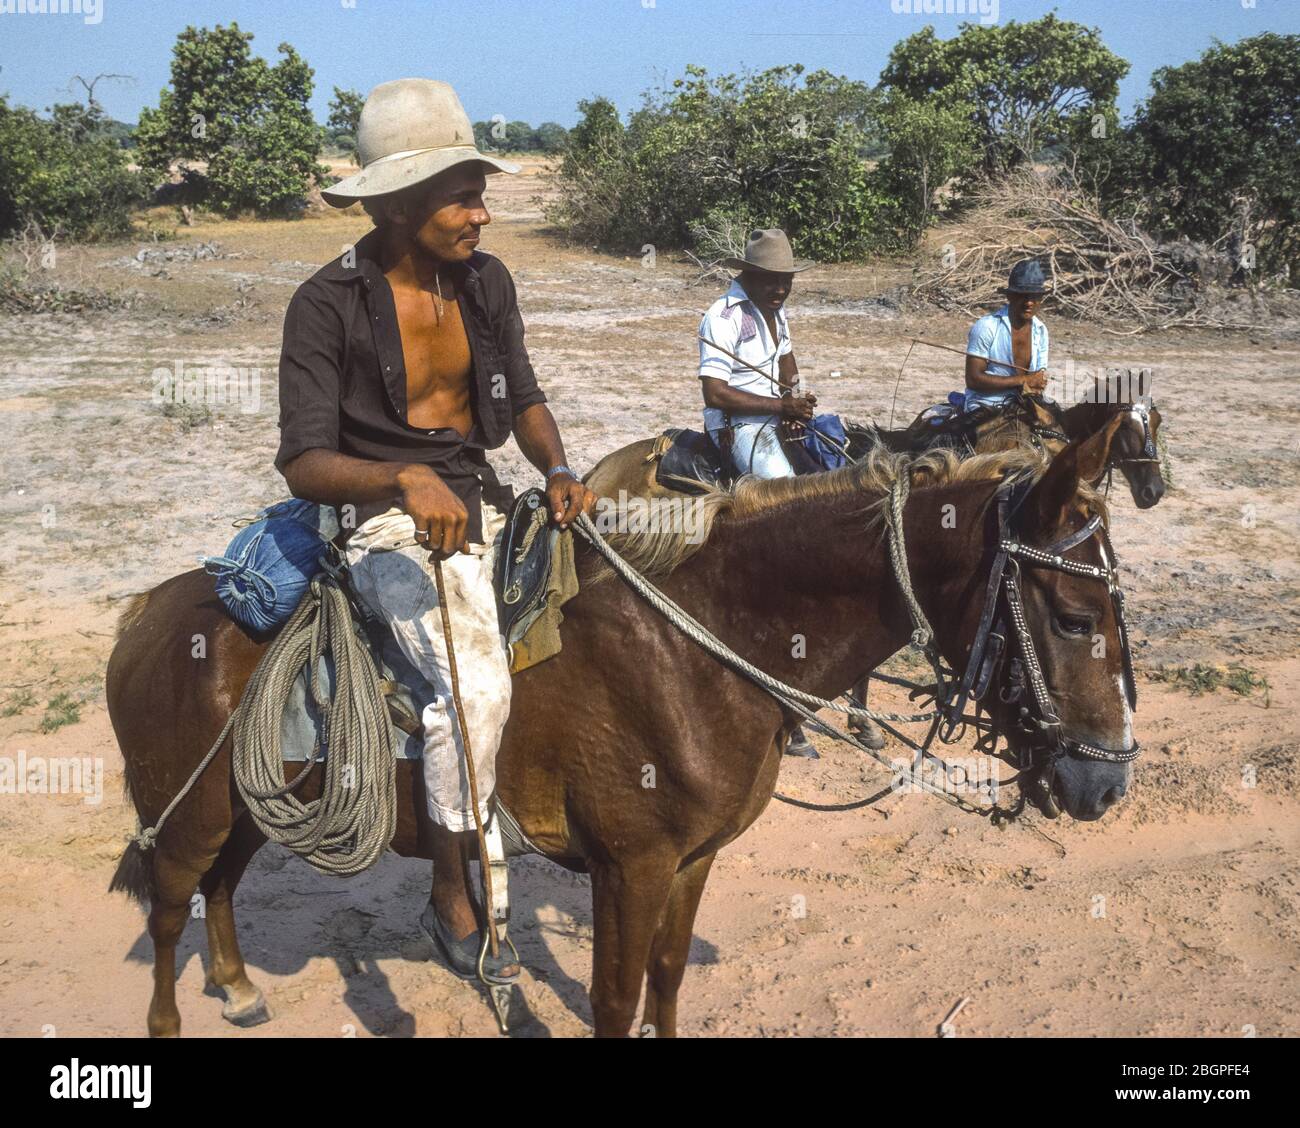 APURE STATE, VENEZUELA - Plains Cowboys auf dem Pferd auf llanos (Ebene) im Südwesten Venezuelas,1988. Stockfoto